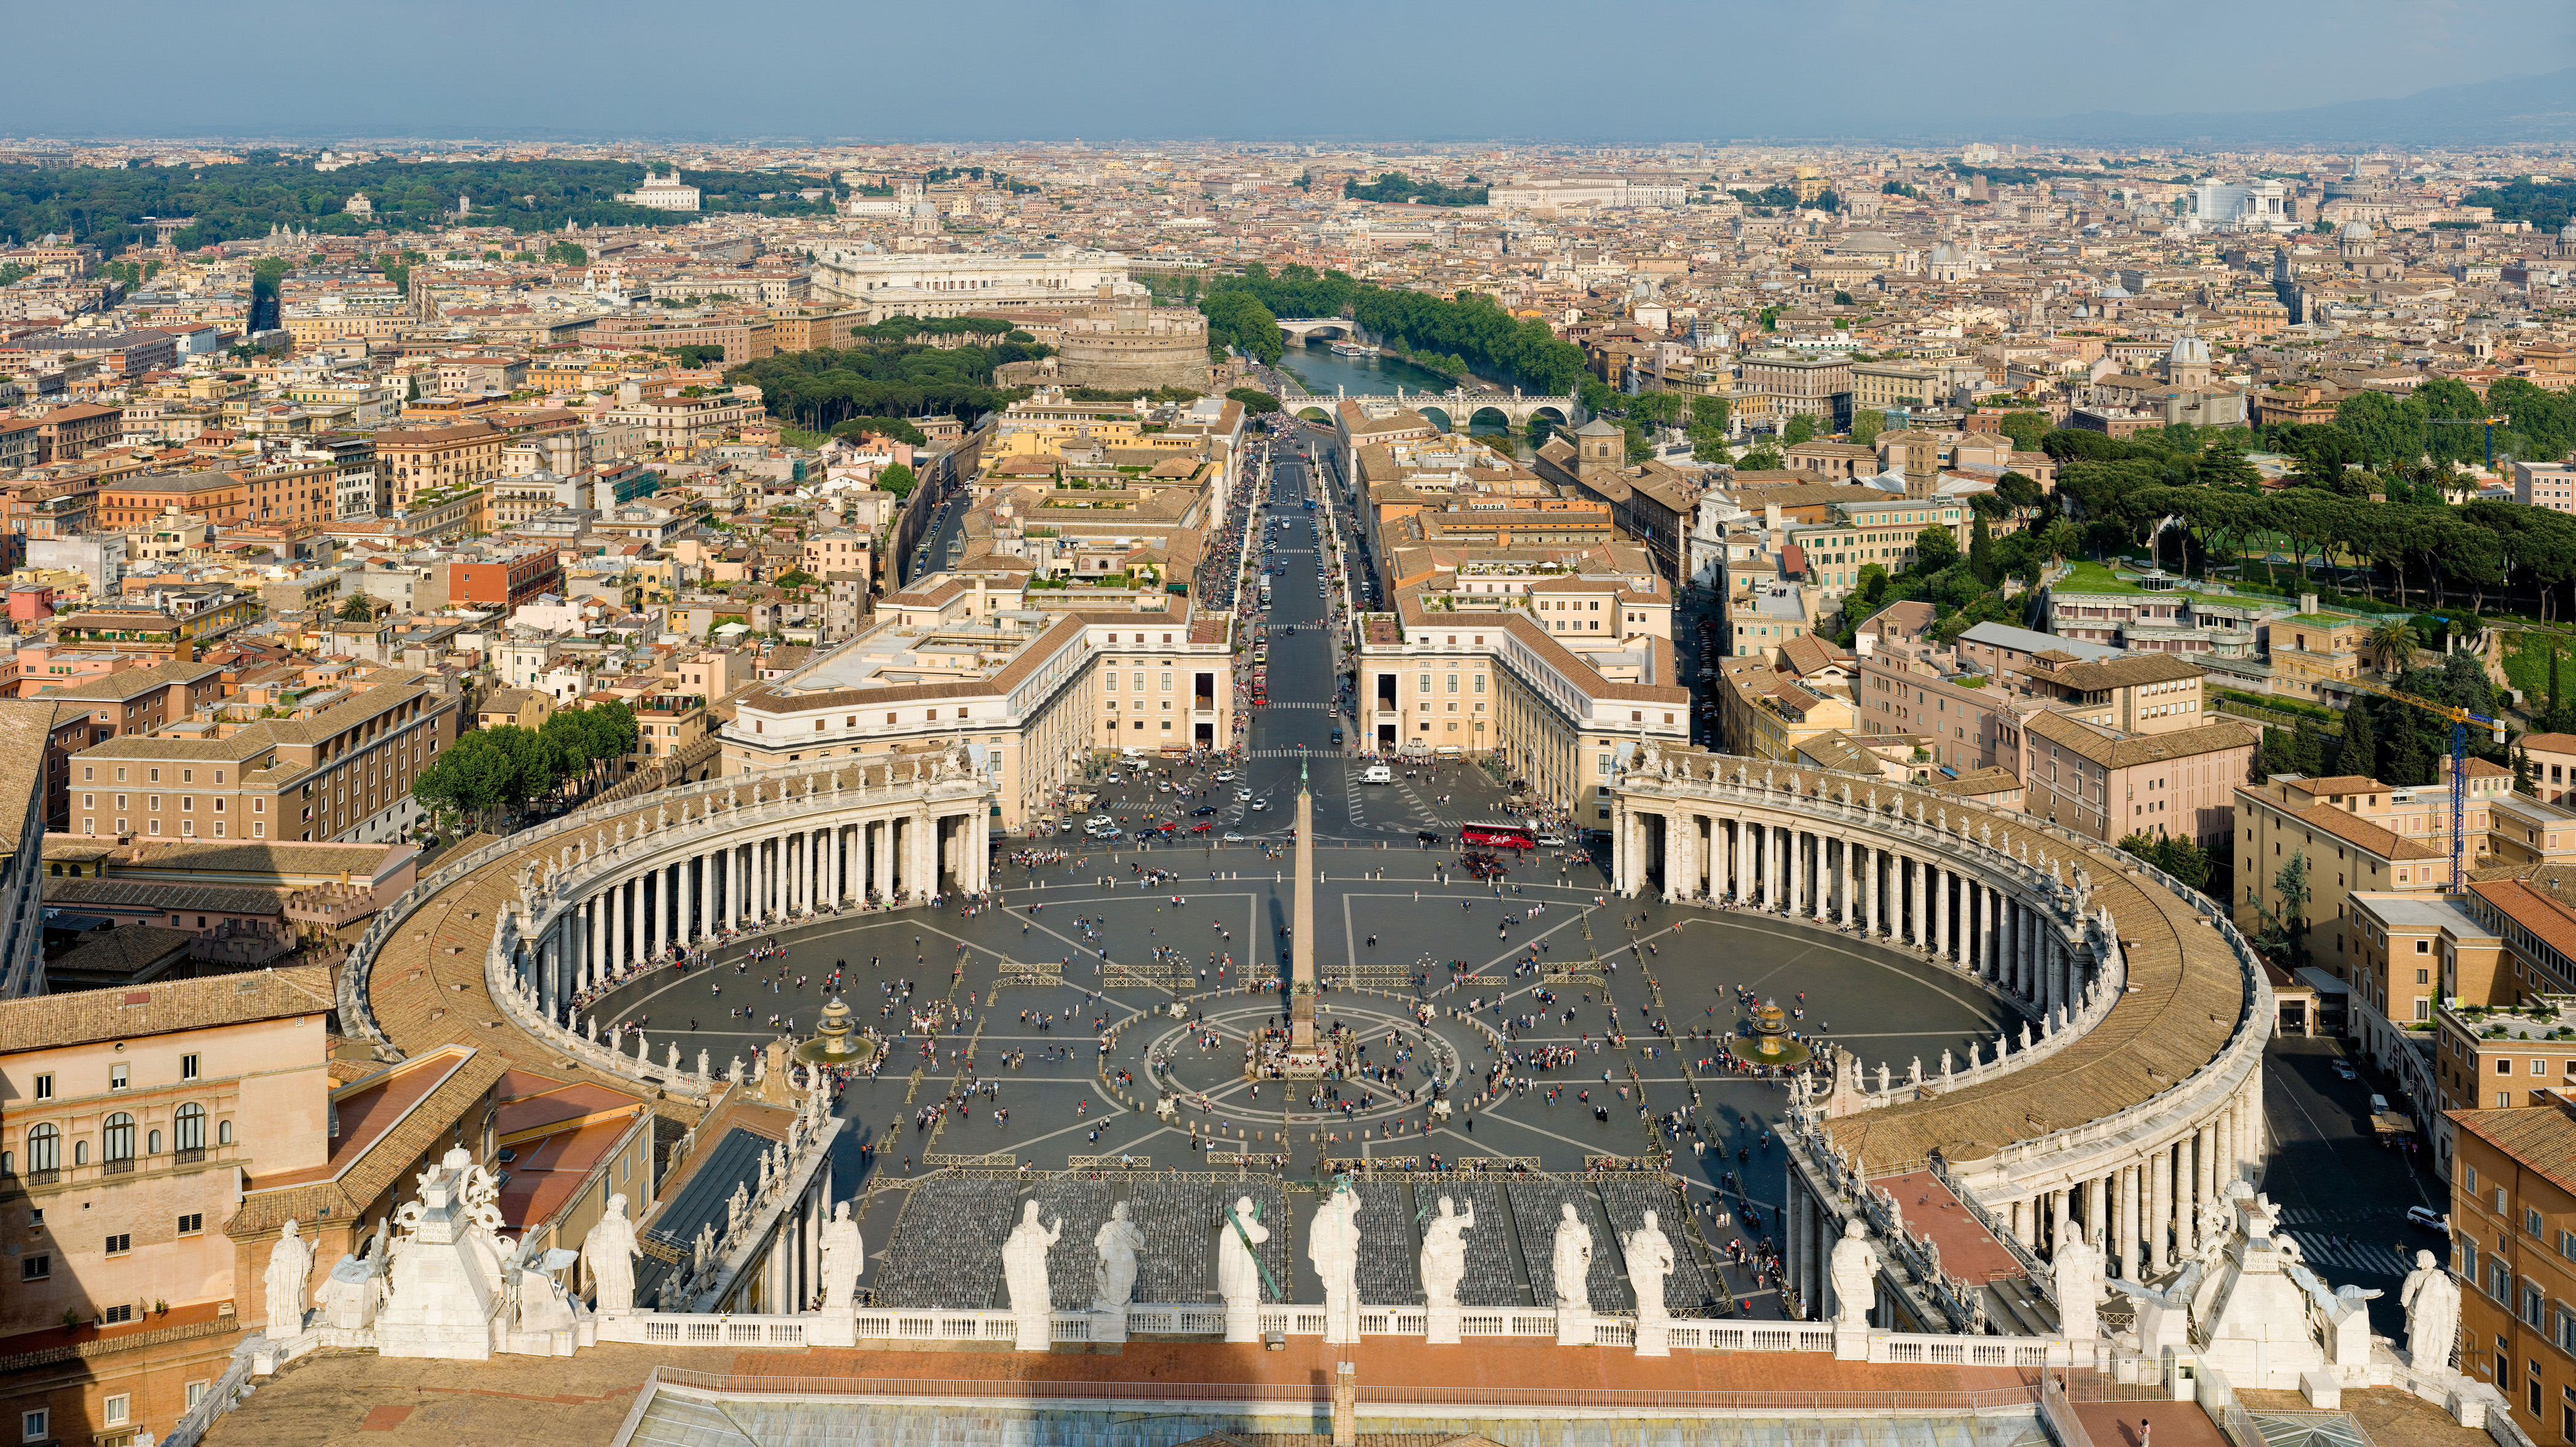 St_Peters_Square,_Vatican_City_-_April_2